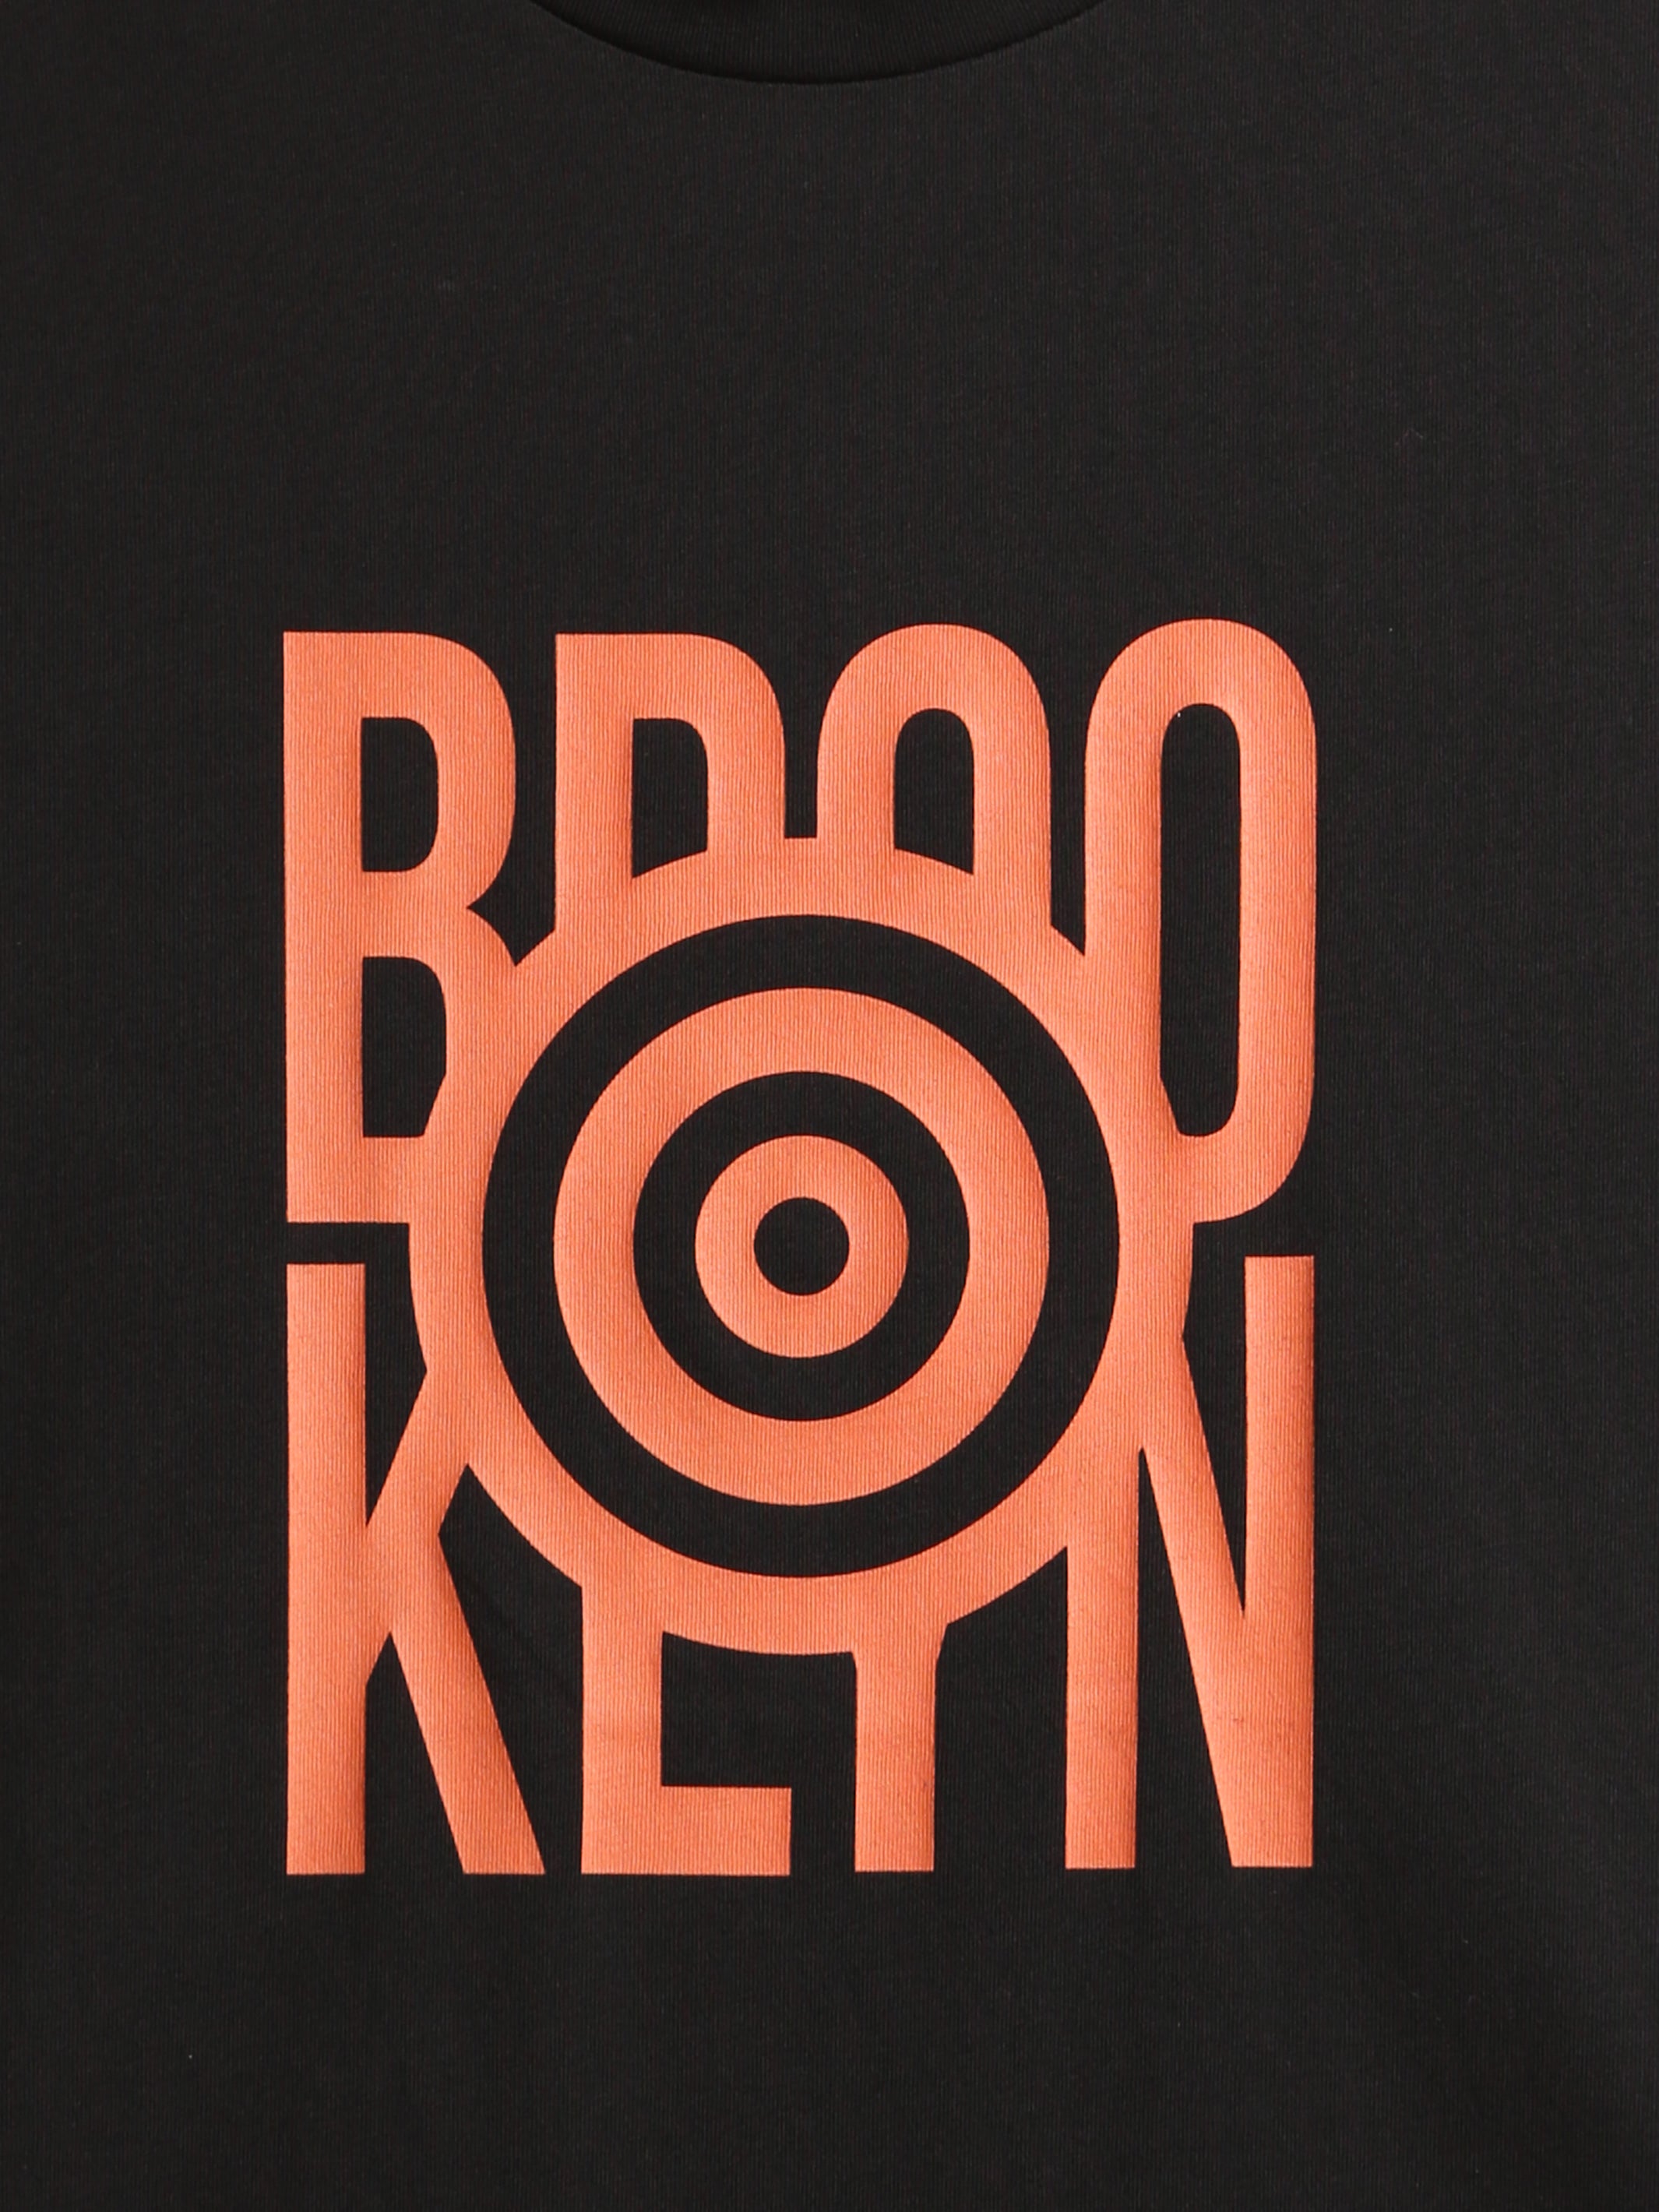 Men's Brooklyn Target T-shirt - BROOKLYN INDUSTRIES